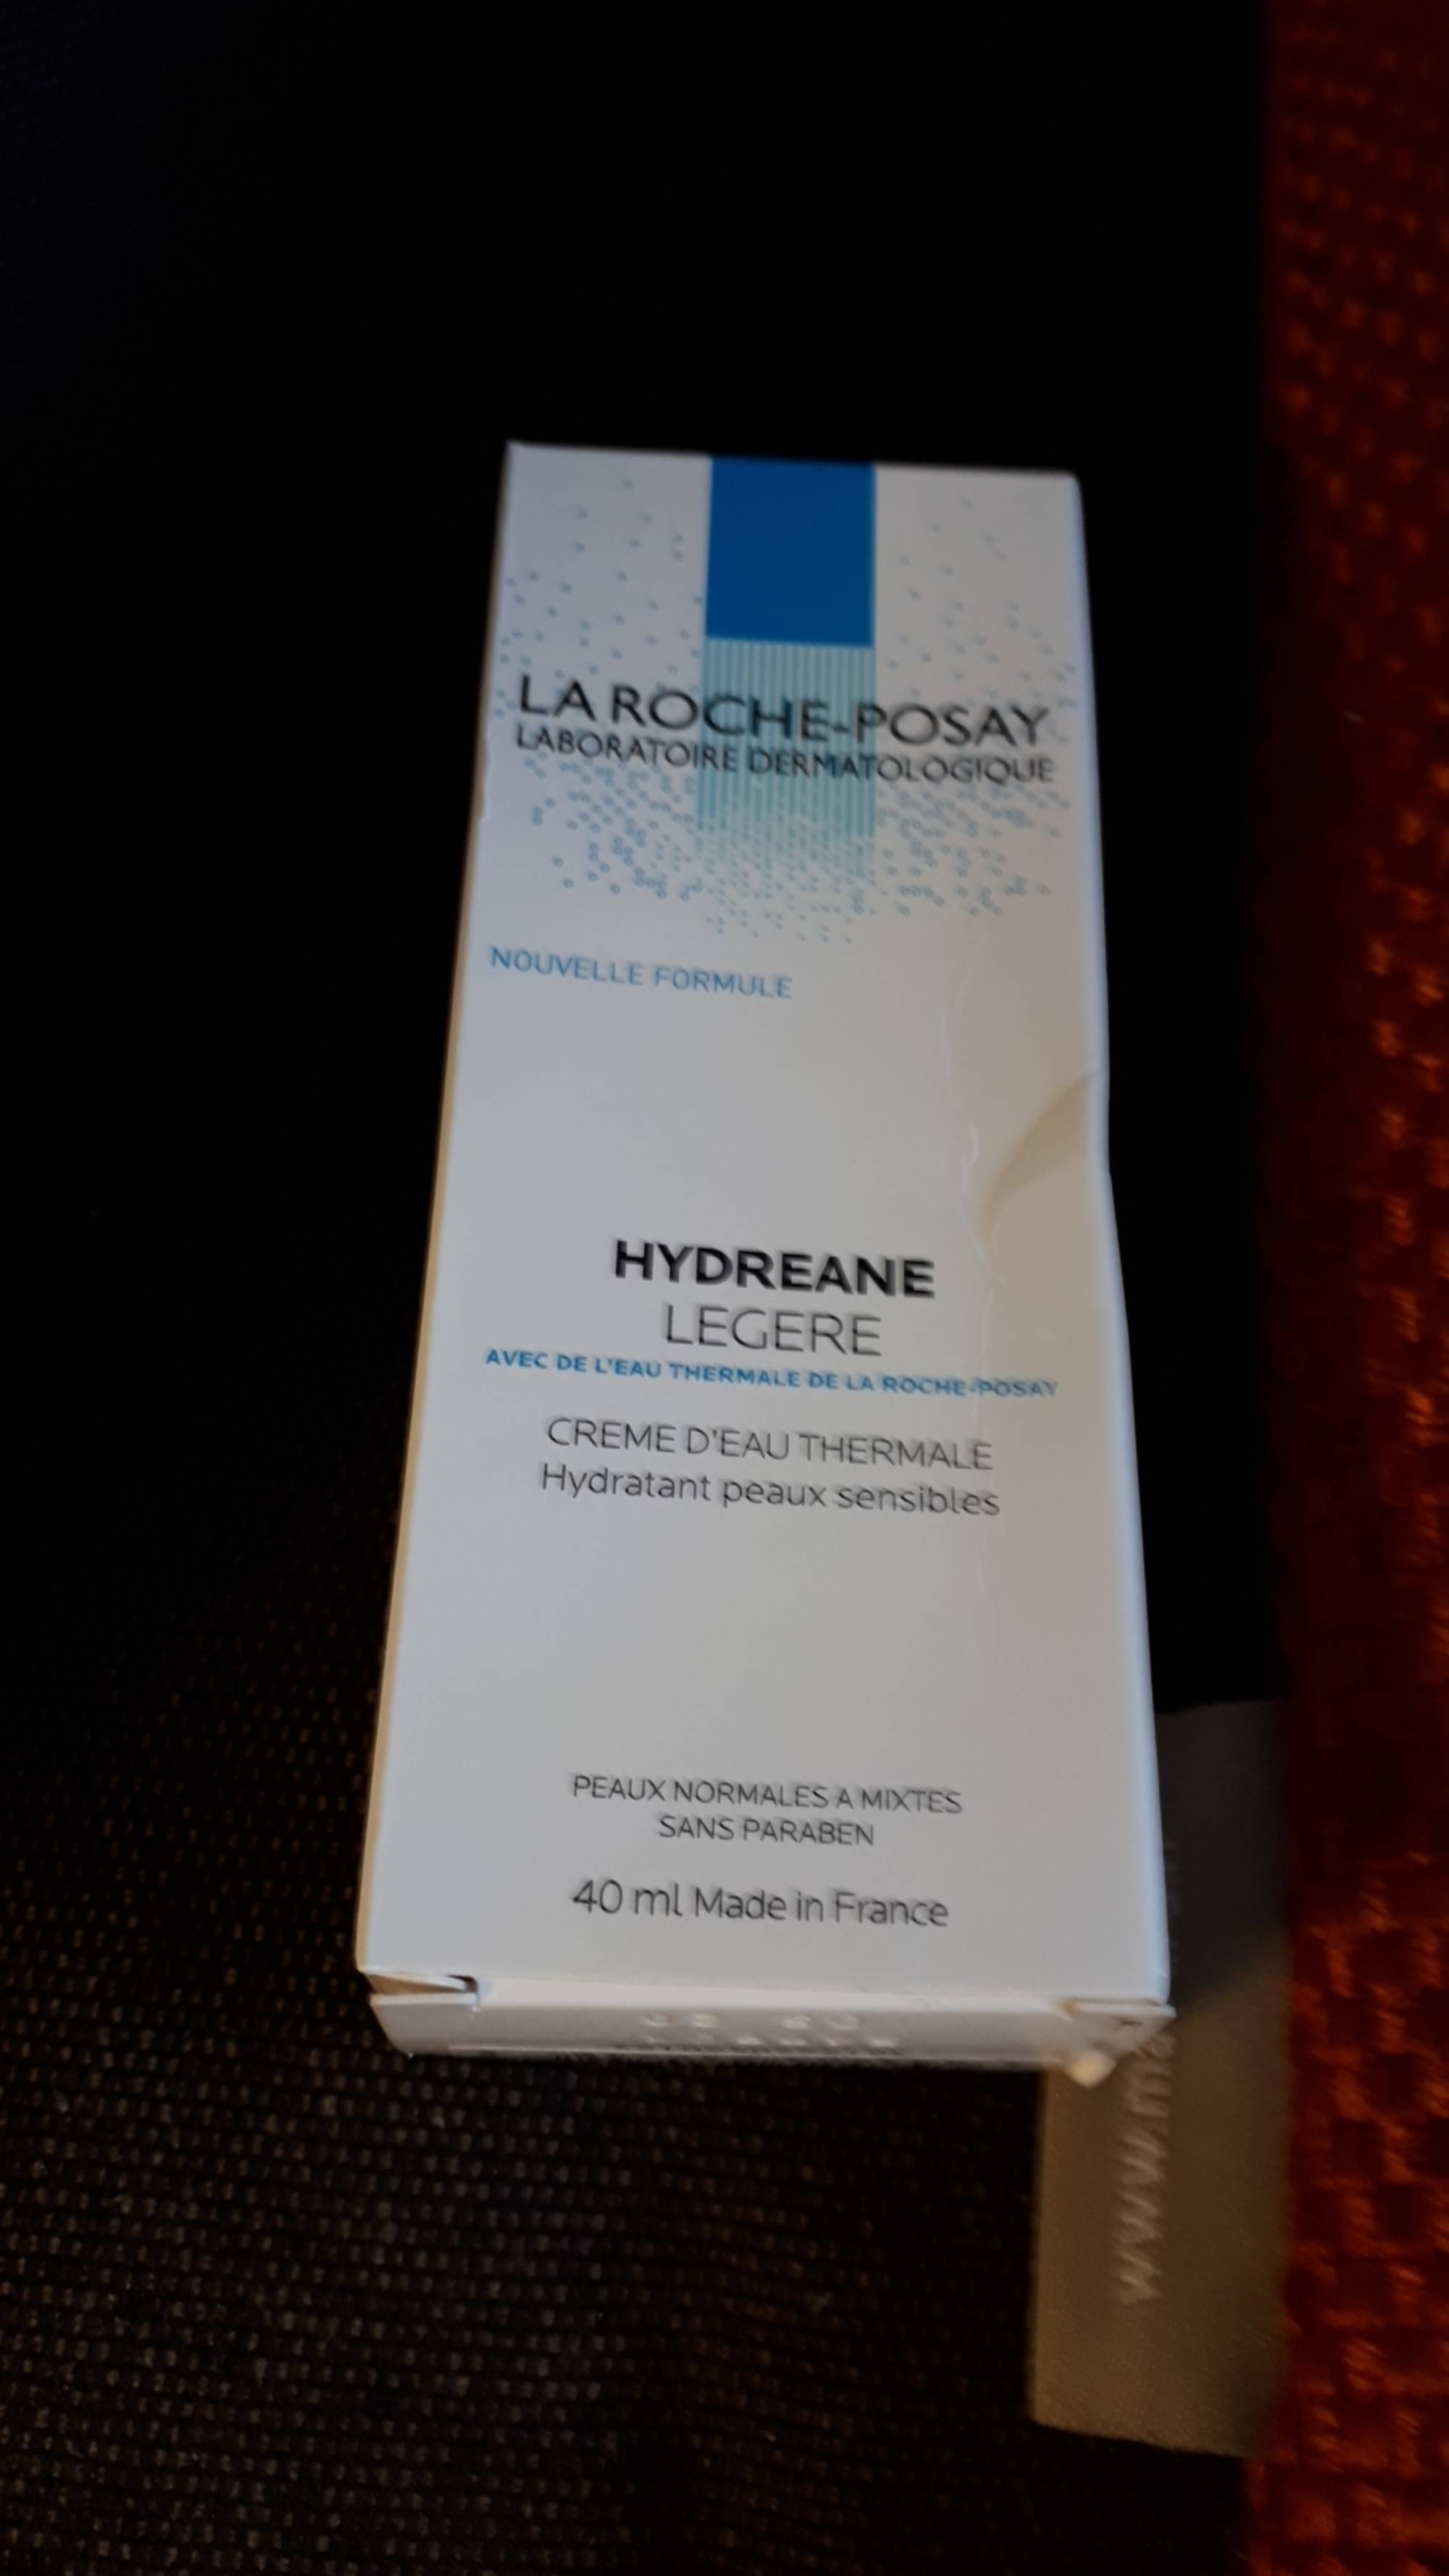 LA ROCHE-POSAY - Hydreane légère - Crème d'eau thermale